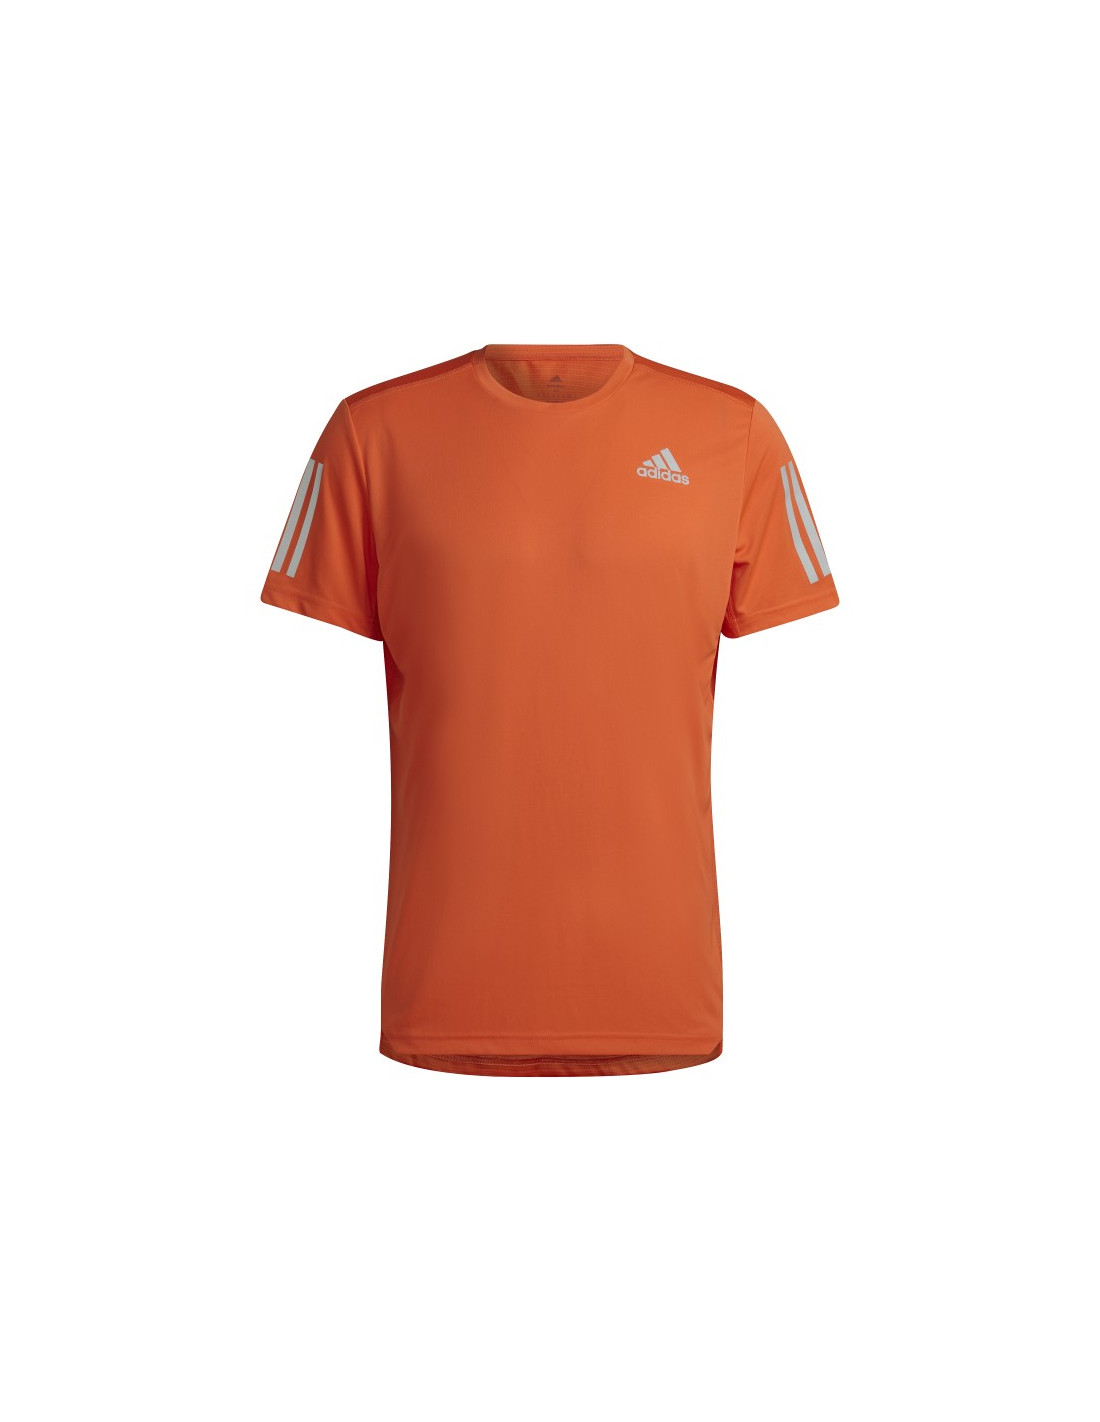 Inspiración étnico carolino Camiseta Adidas de entrenamiento o para correr en color naranja